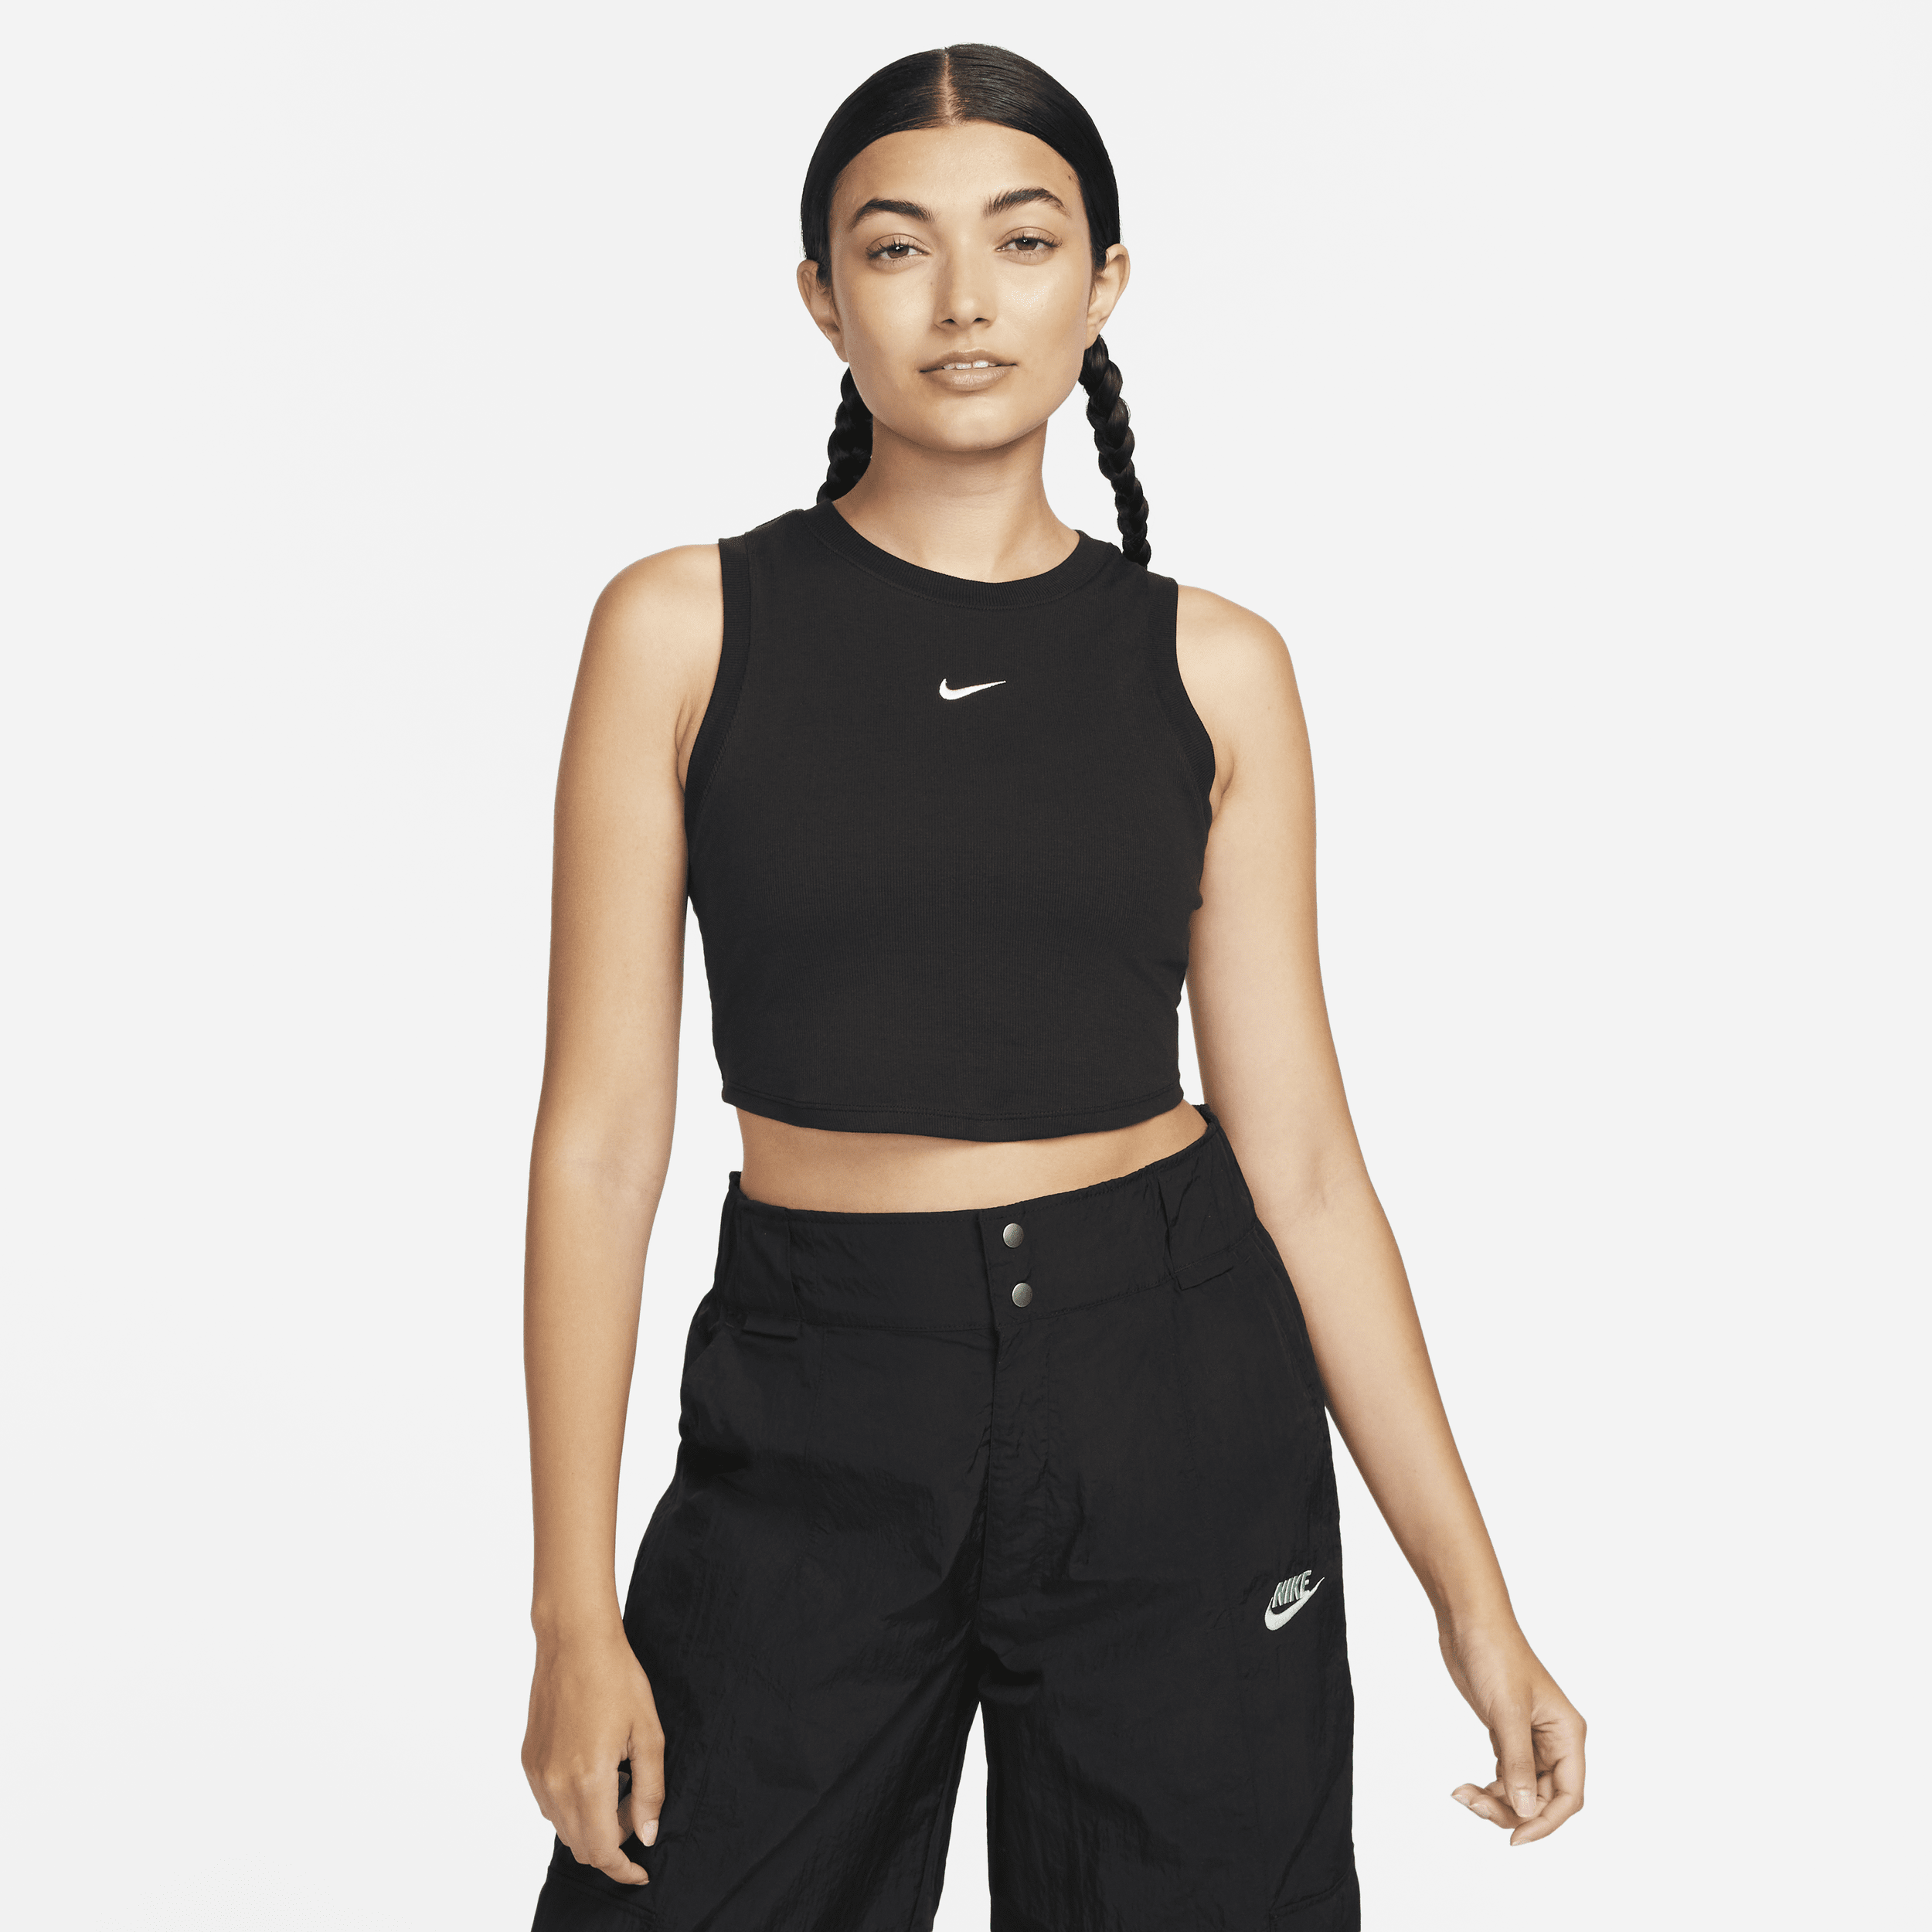 Canotta corta e aderente a mini costine Nike Sportswear Chill Knit – Donna - Nero